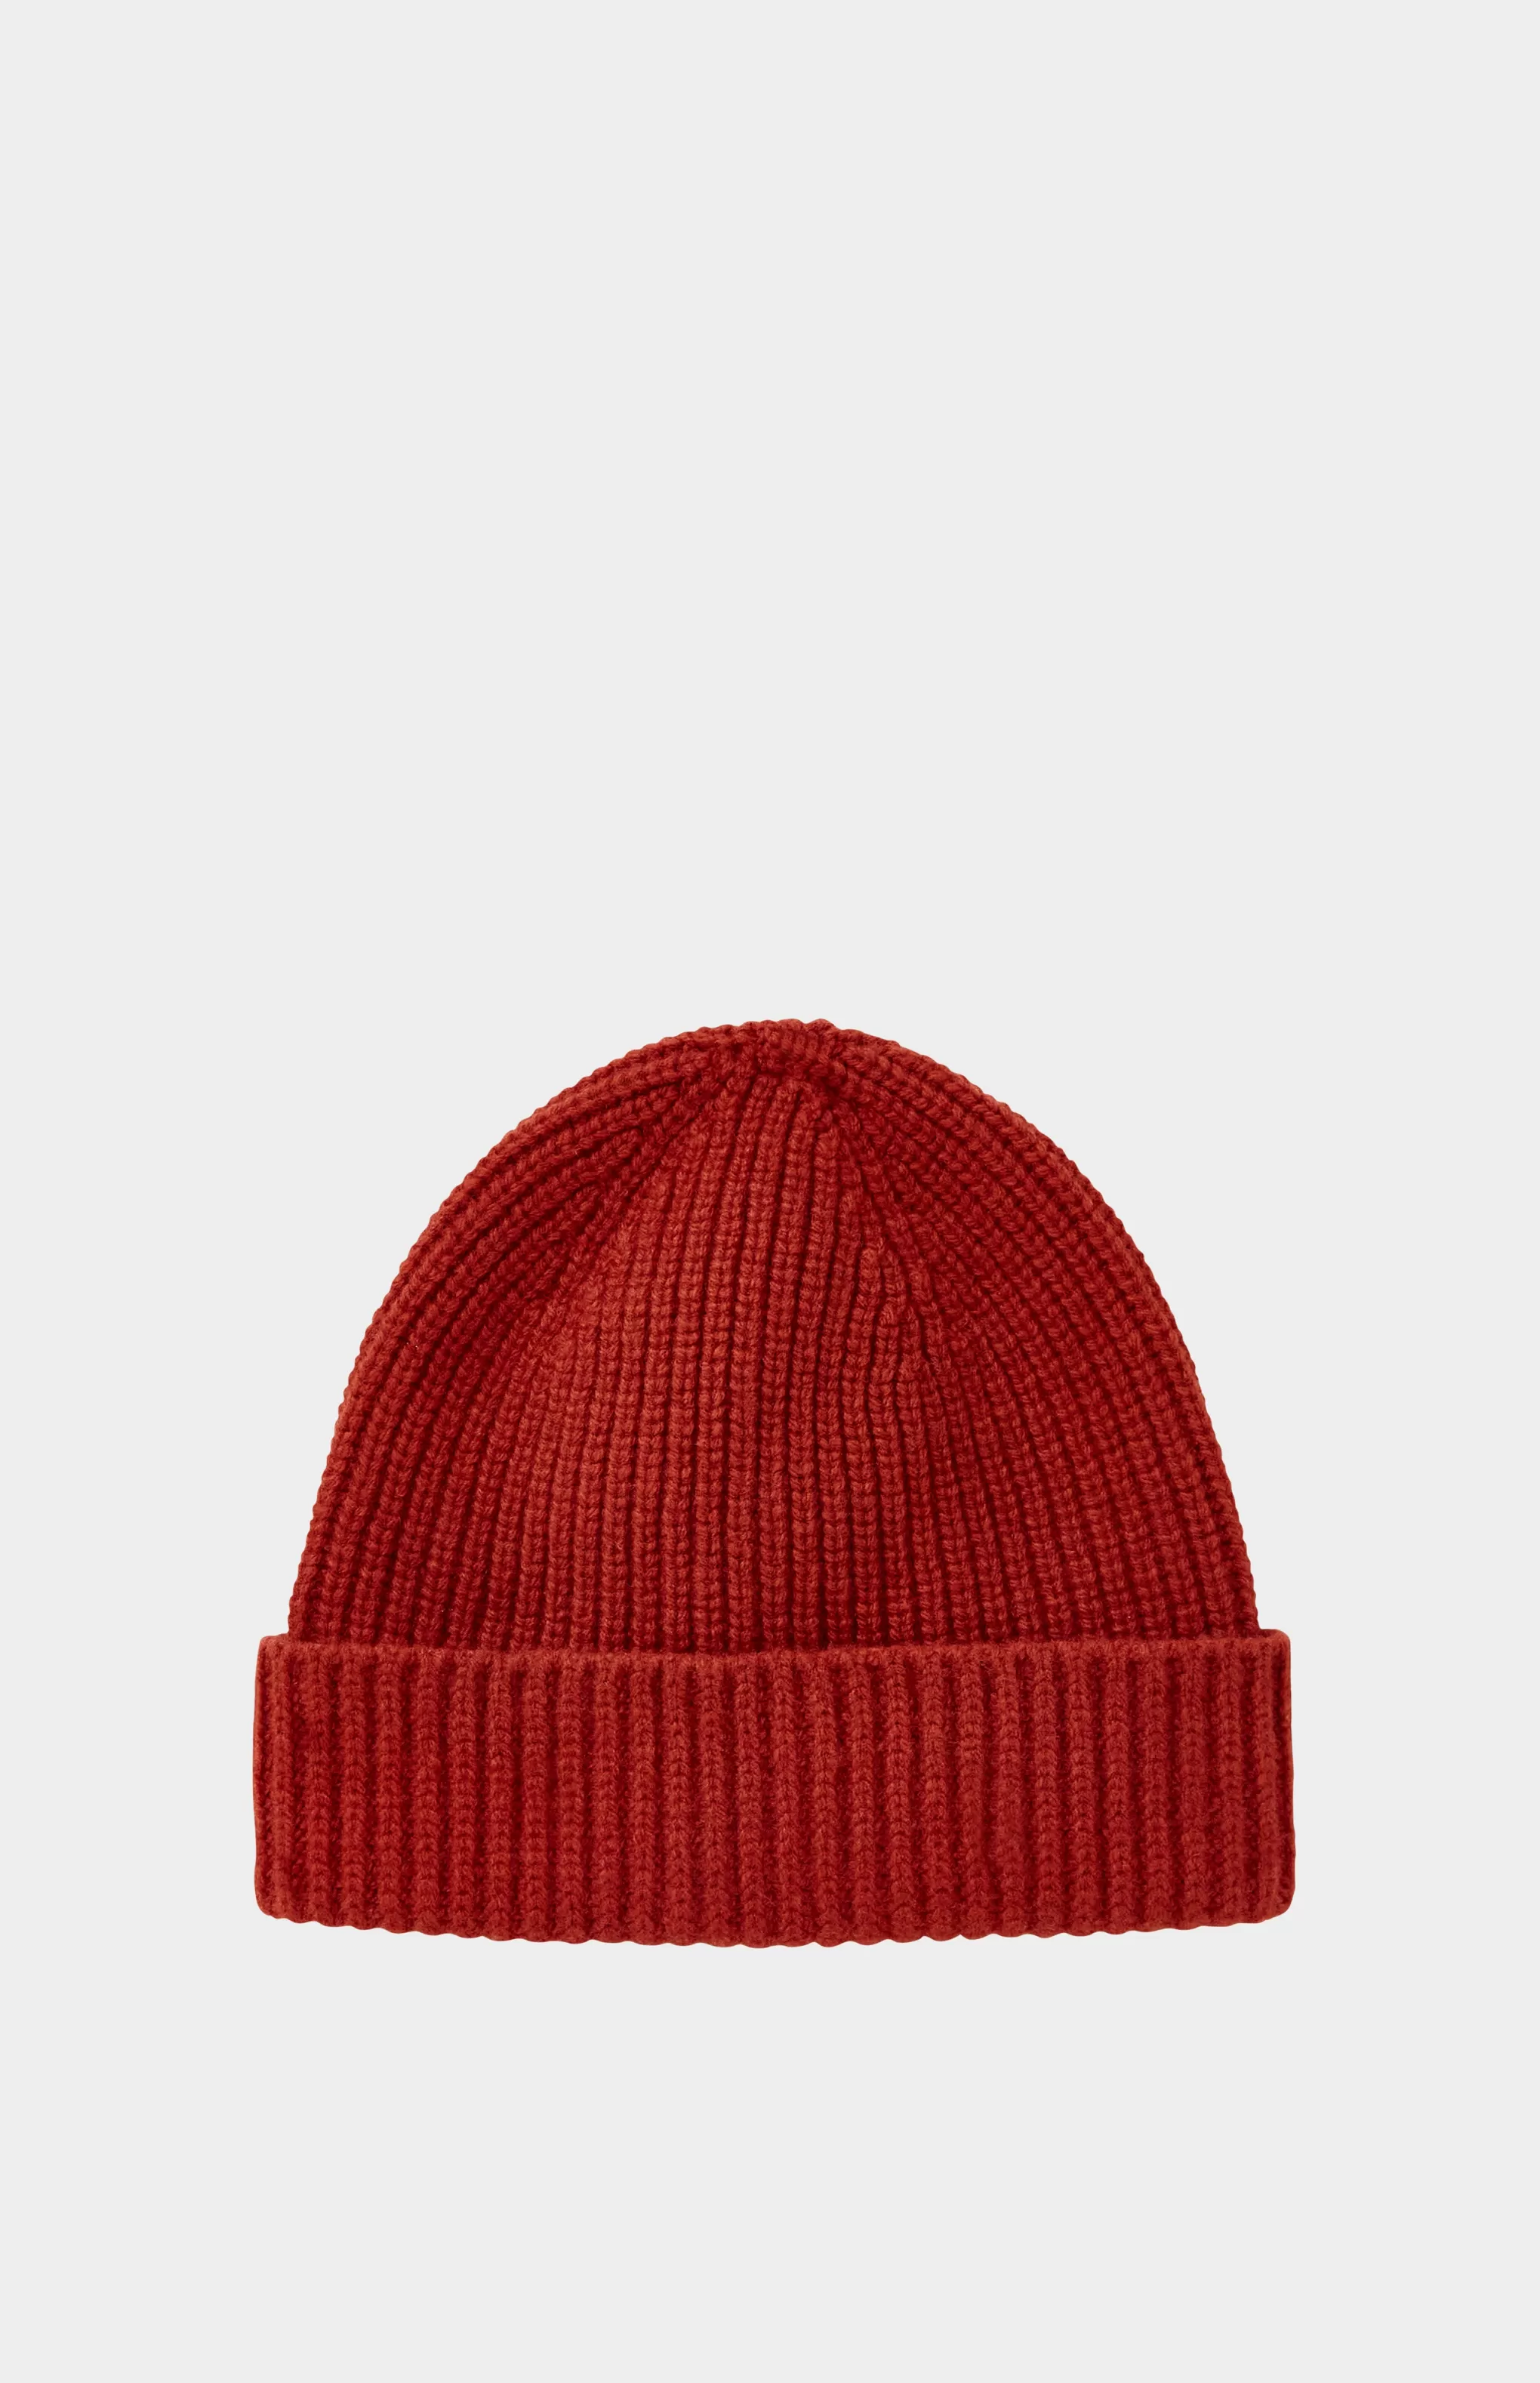 Cheap Lambswool Beanie In Rust Red Men/Women Hats